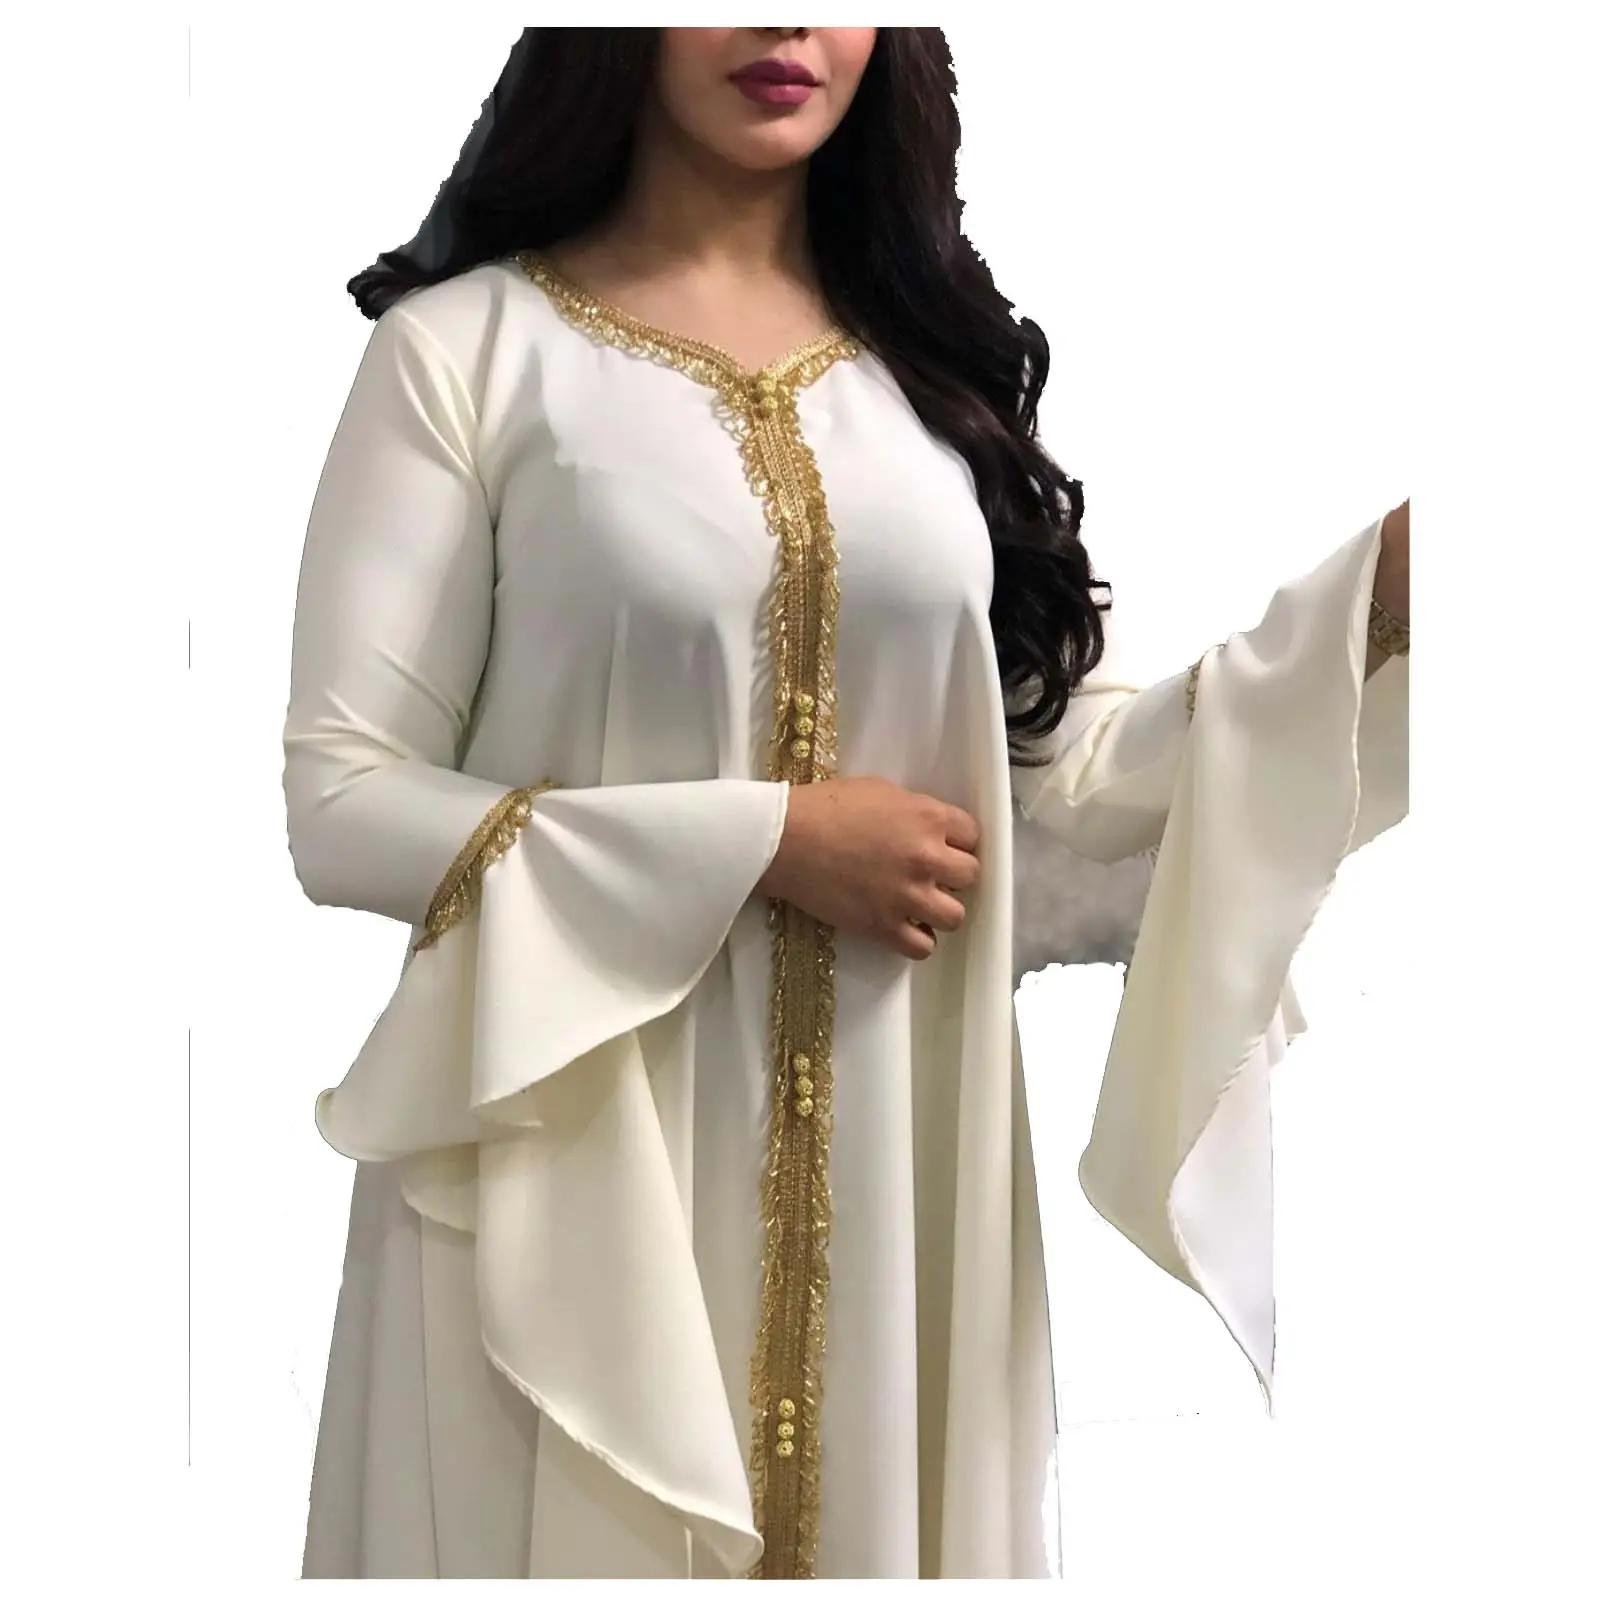 ملابس نسائية من الملايو, ملابس نسائية إسلامية ، ملابس نسائية مطرزة بالكشكشة باللون الذهبي ، فستان طويل موديل 2021